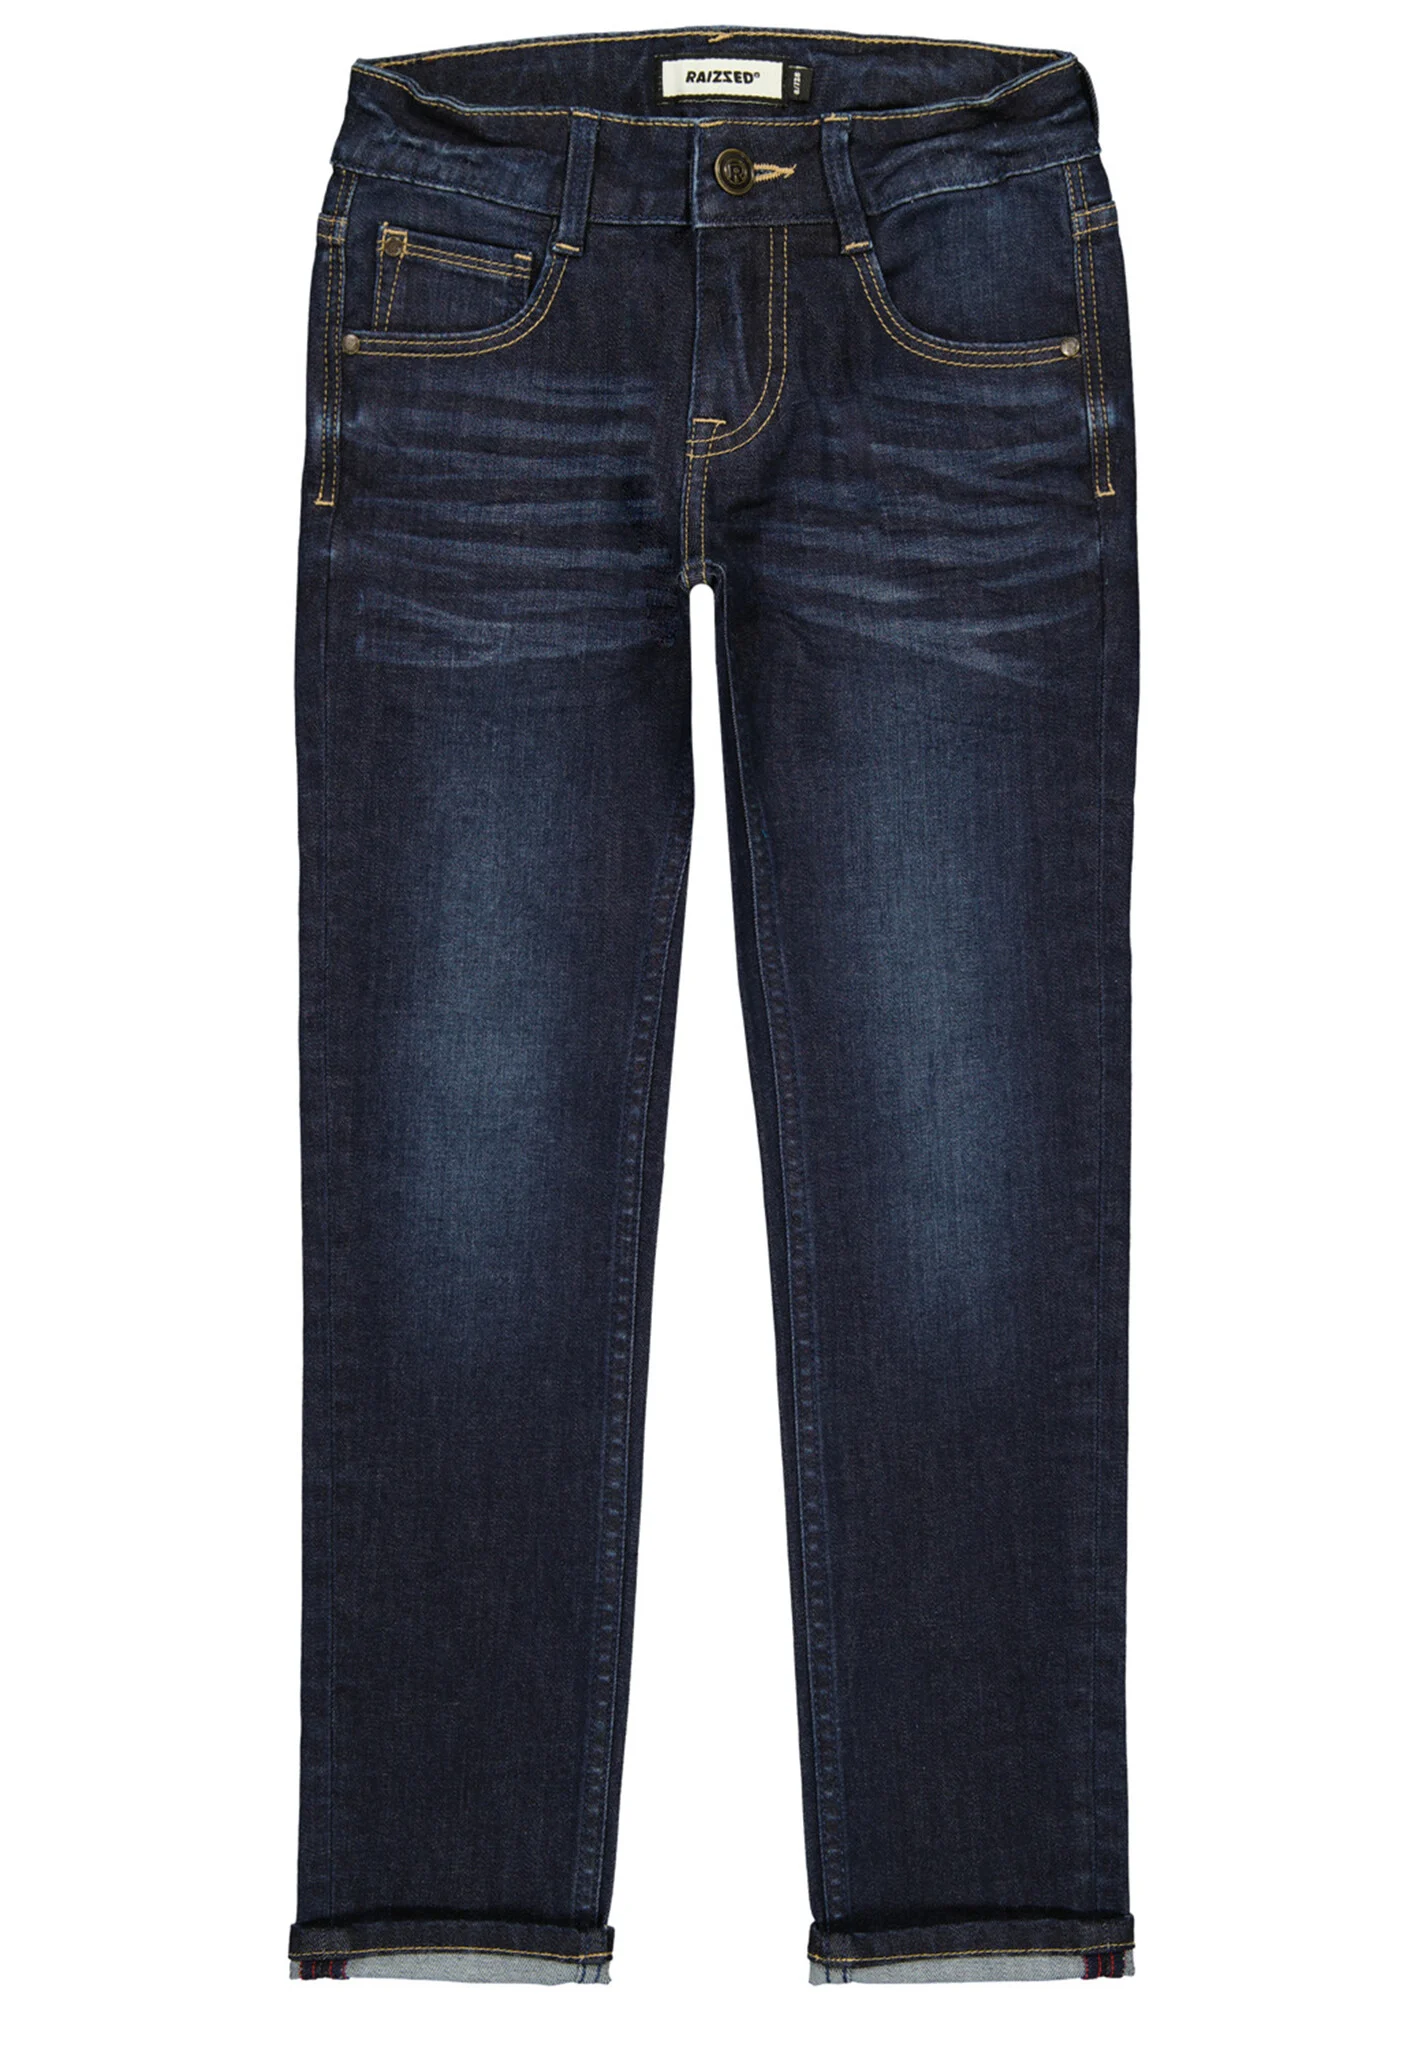 Raizzed Jongens jeans santiago slim fit dark blue